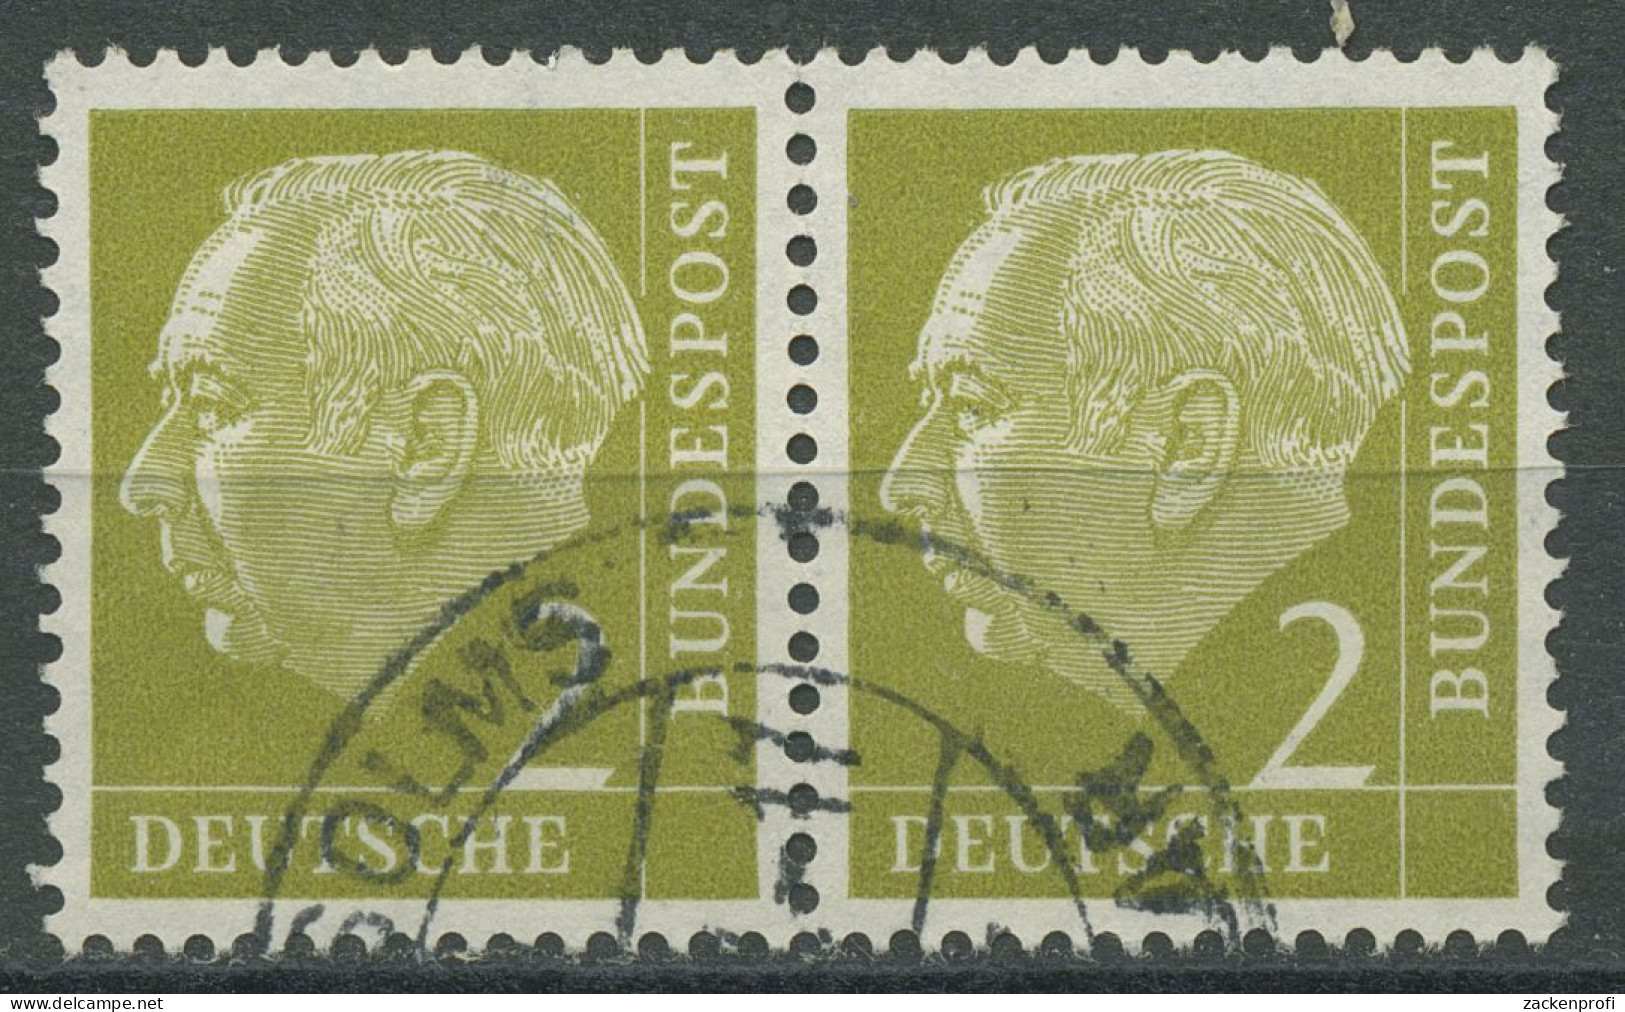 Bund 1954 Th. Heuss I Bogenmarken 177 Waagerechtes Paar Gestempelt - Gebruikt